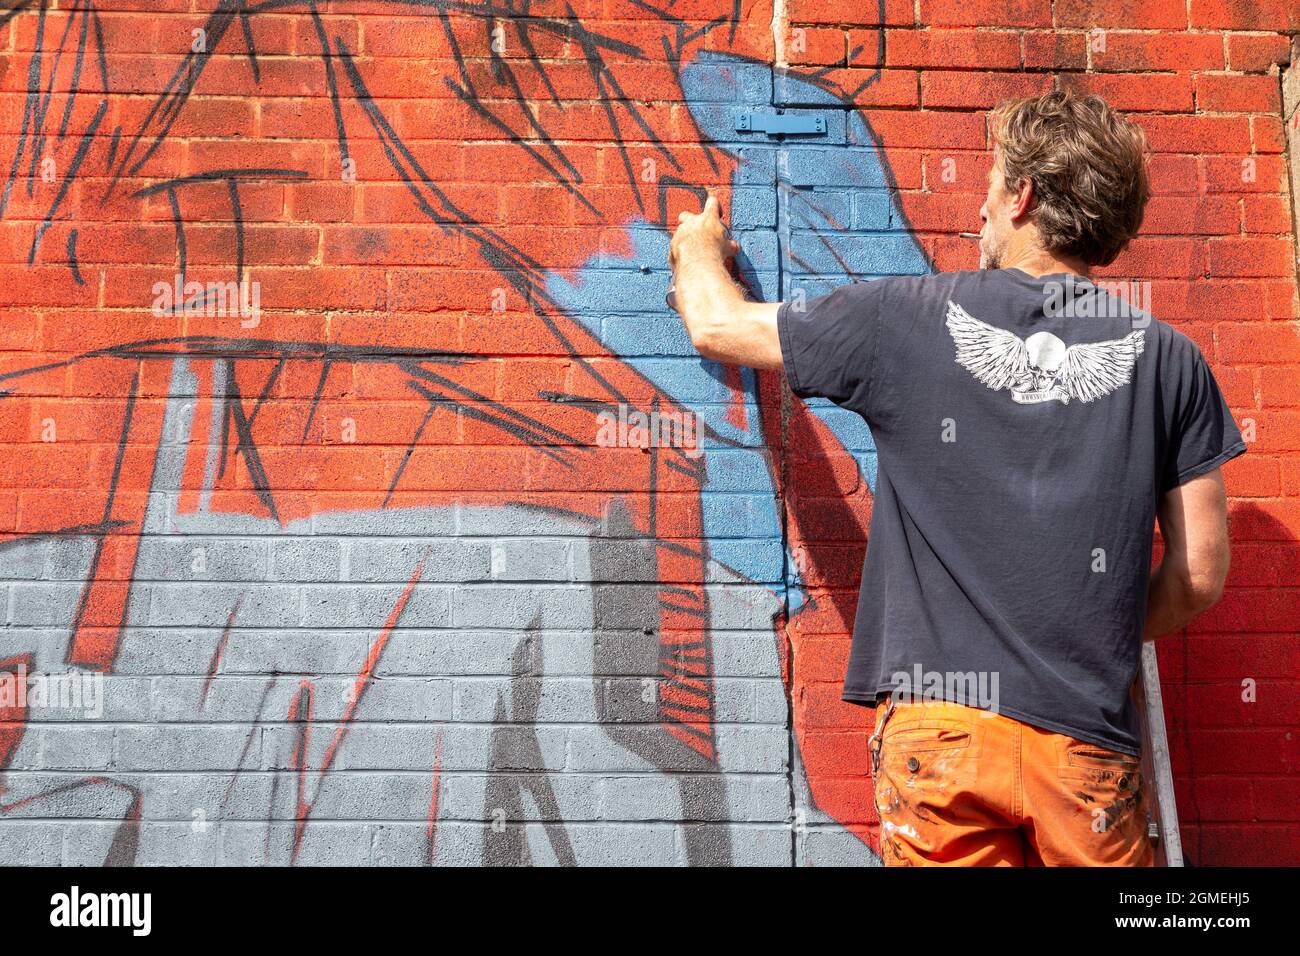 Birmingham, Regno Unito. 18 settembre 2021. Un artista graffiti al lavoro durante l'High Vis Street Culture Festival che si svolge nel corso del fine settimana a Digbeth, Birmingham. Il quartiere di Digbeth della città è conosciuto per la sua cultura dei graffiti di strada. Credit: Peter Lopeman/Alamy Live News Foto Stock